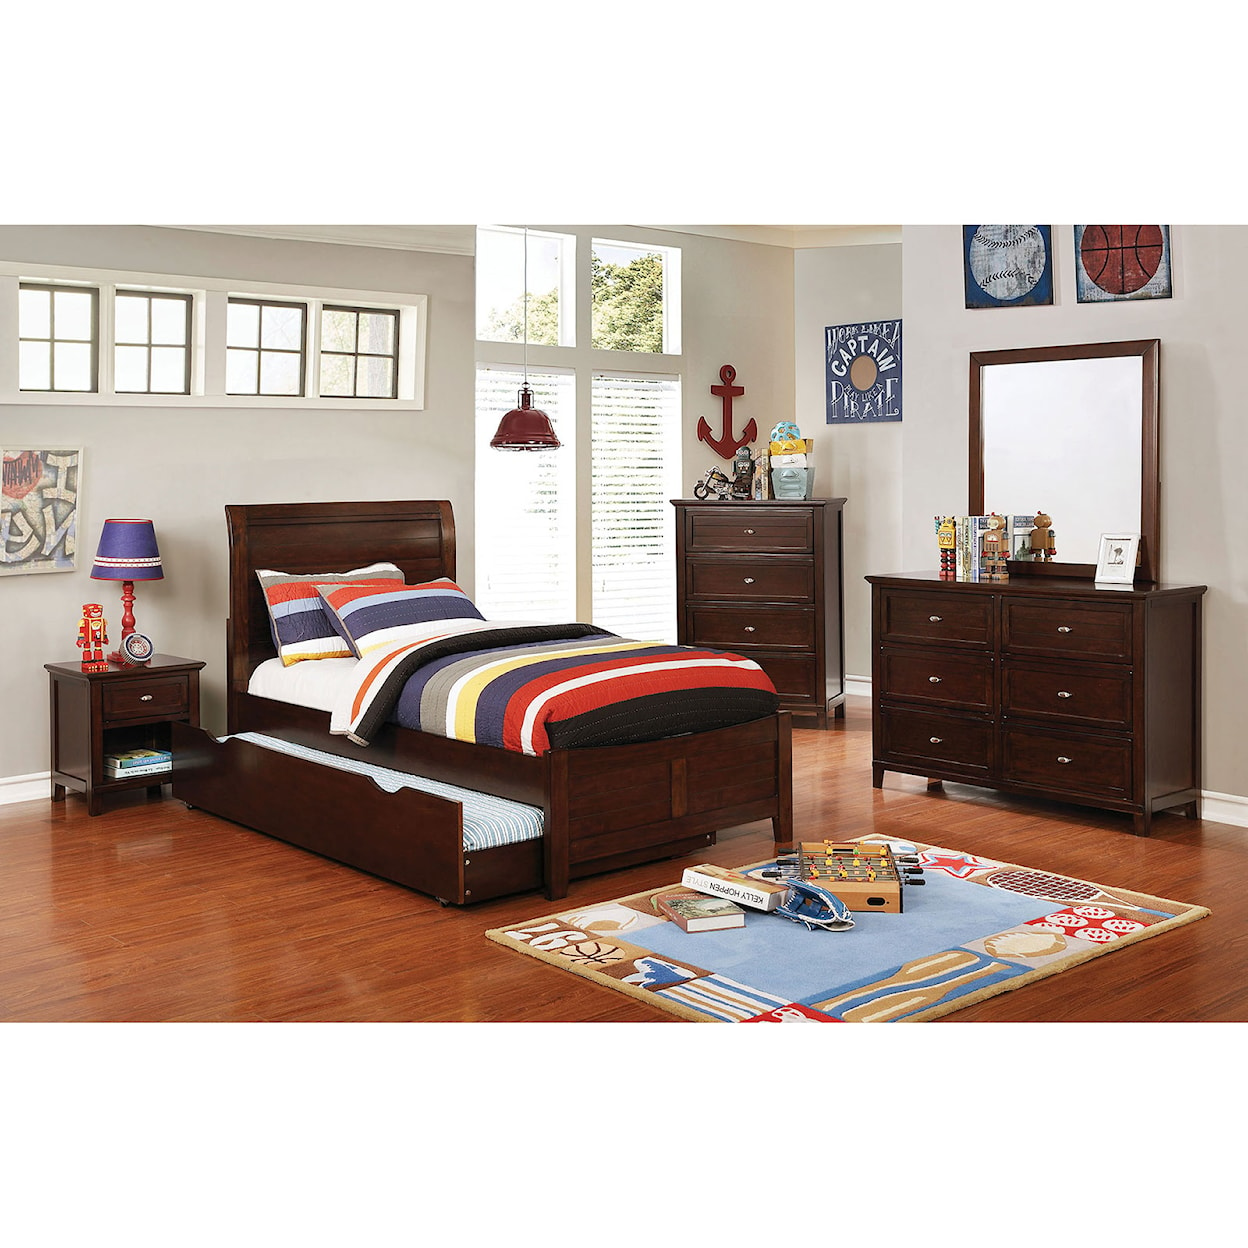 Furniture of America - FOA Brogan 4 Pc. Full Bedroom Set